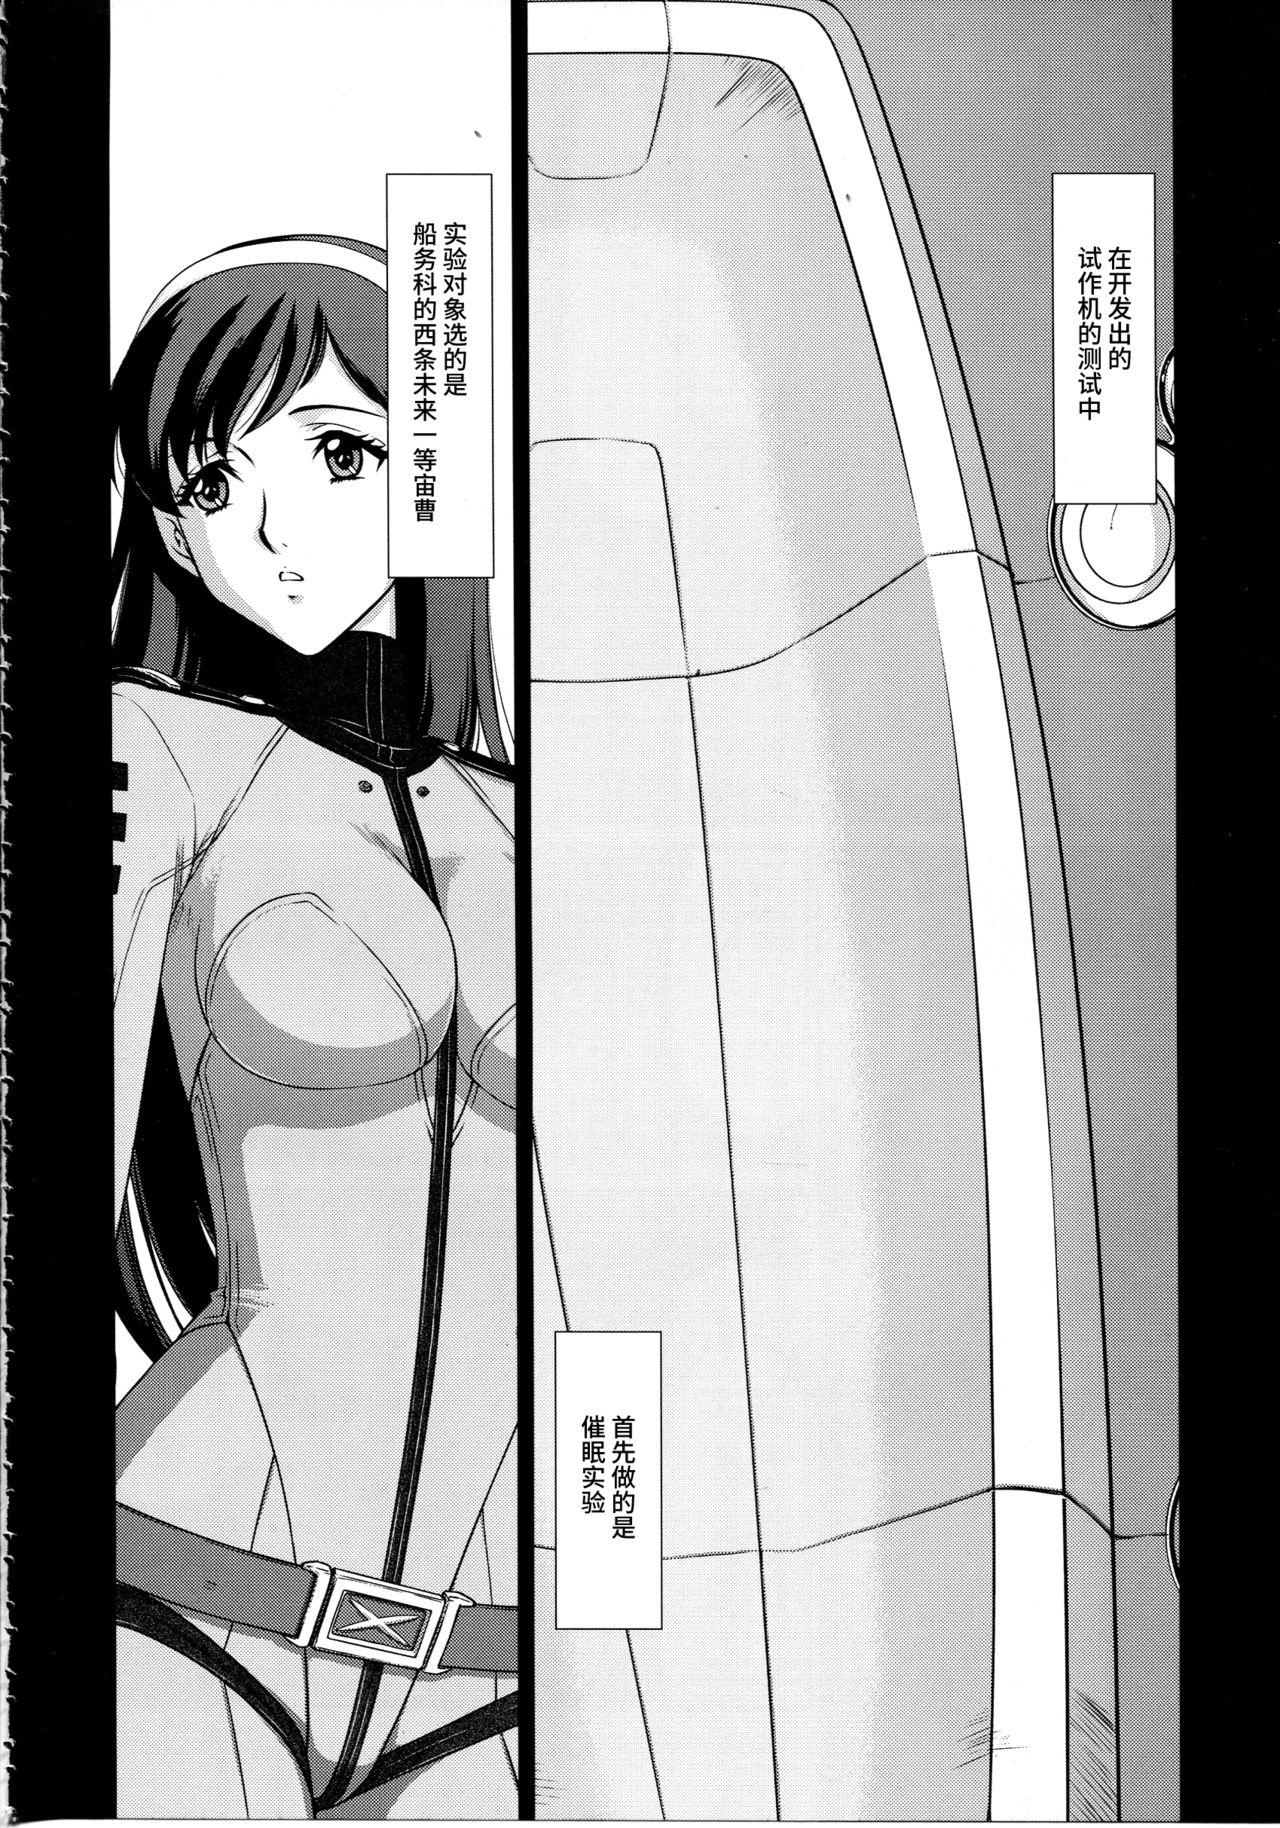 Swing Yuki no Shizuku - Space battleship yamato 2199 Kinky - Page 5